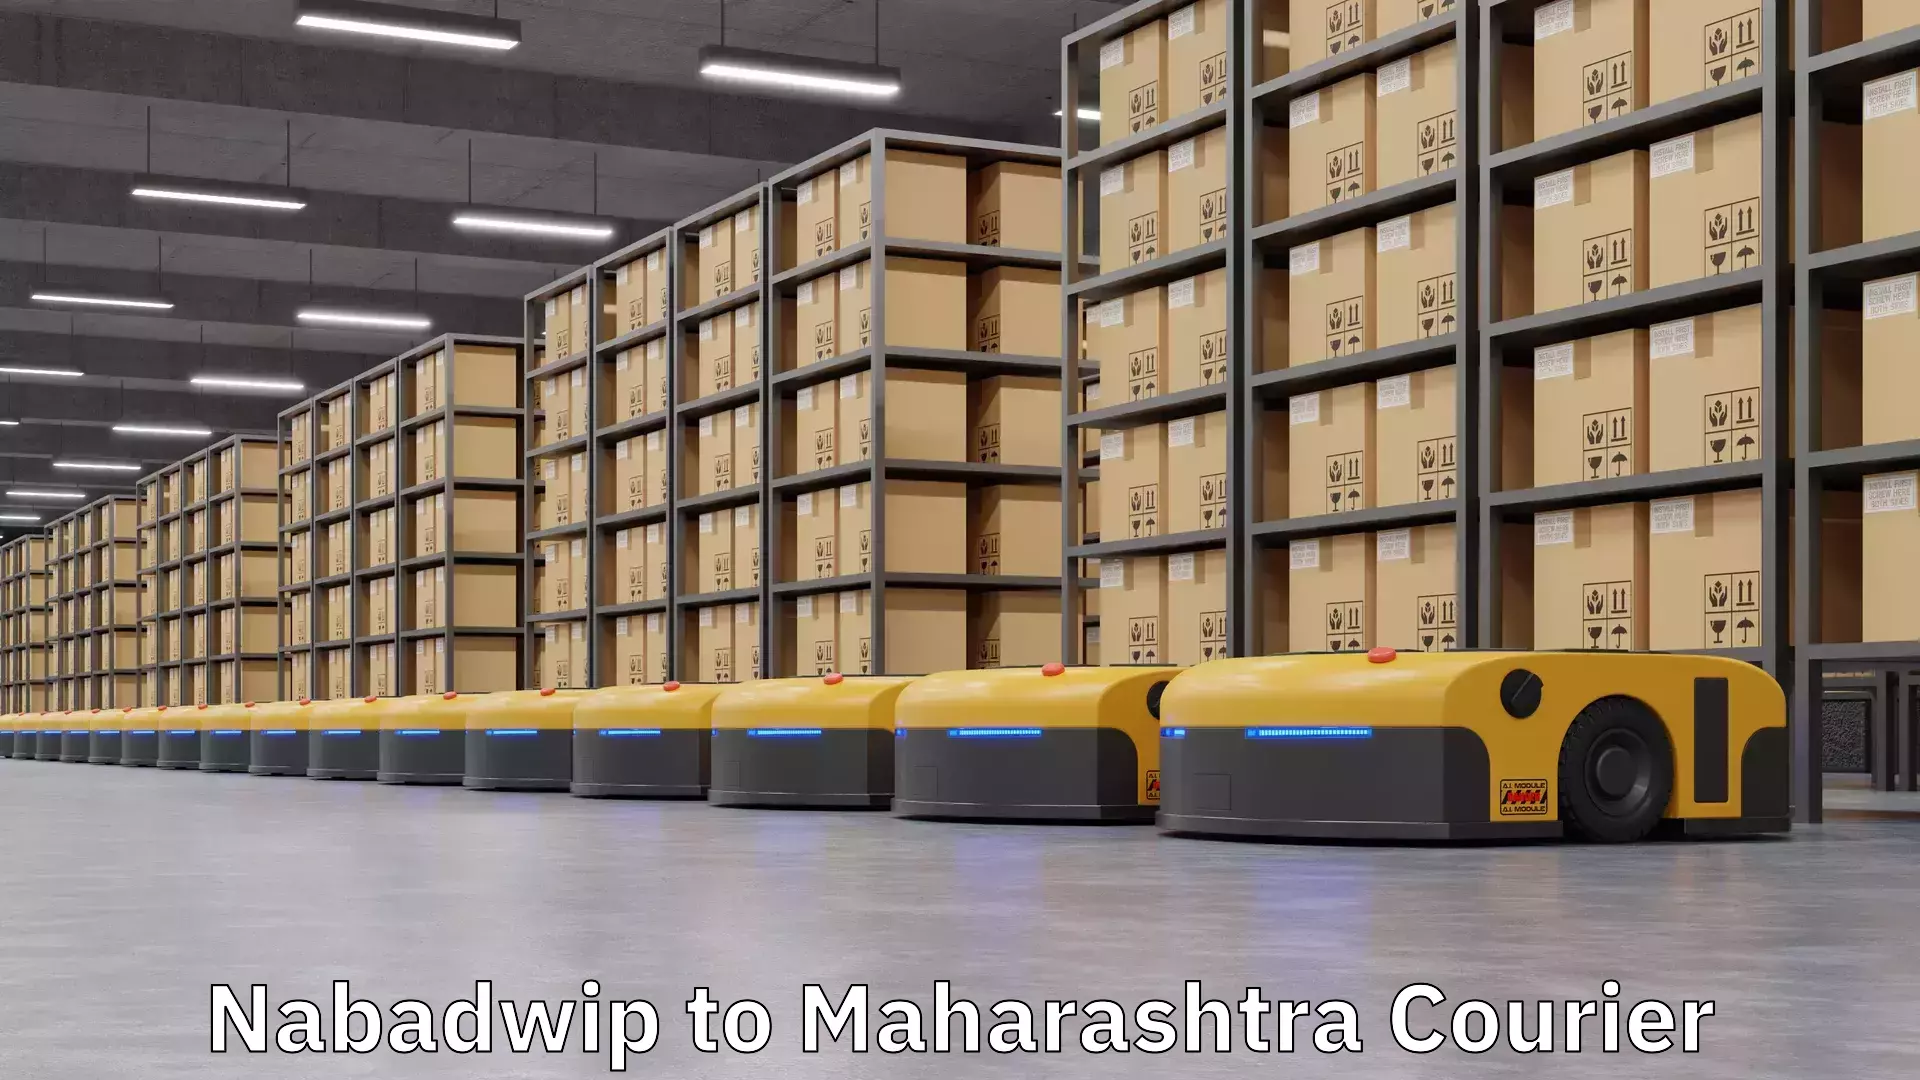 Express mail solutions Nabadwip to Mahabaleshwar